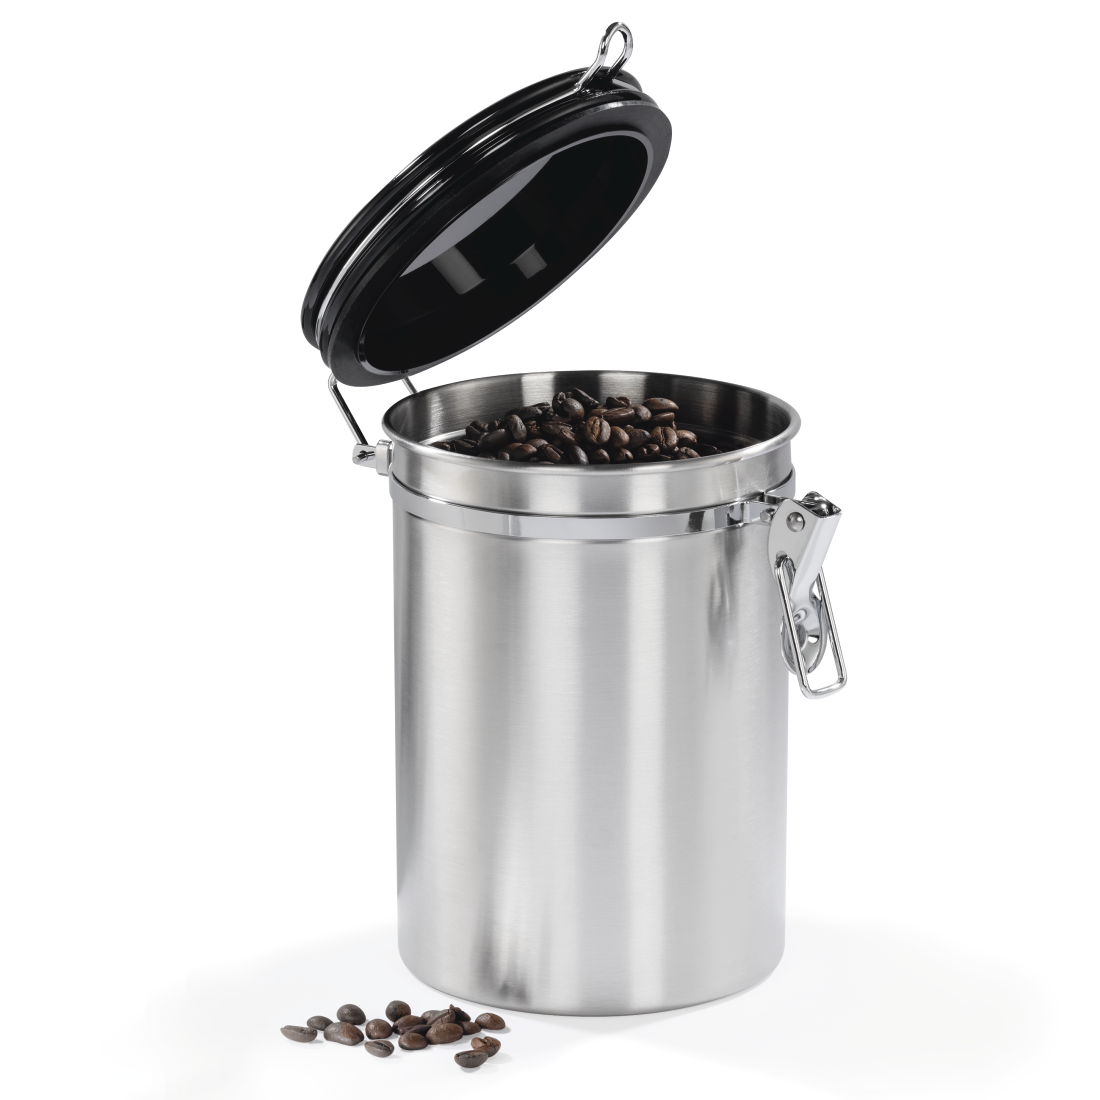 abx4 Druckfähige Abbildung 4 - Xavax, Edelstahldose für 1000 g gemahlenen Kaffee, Silber